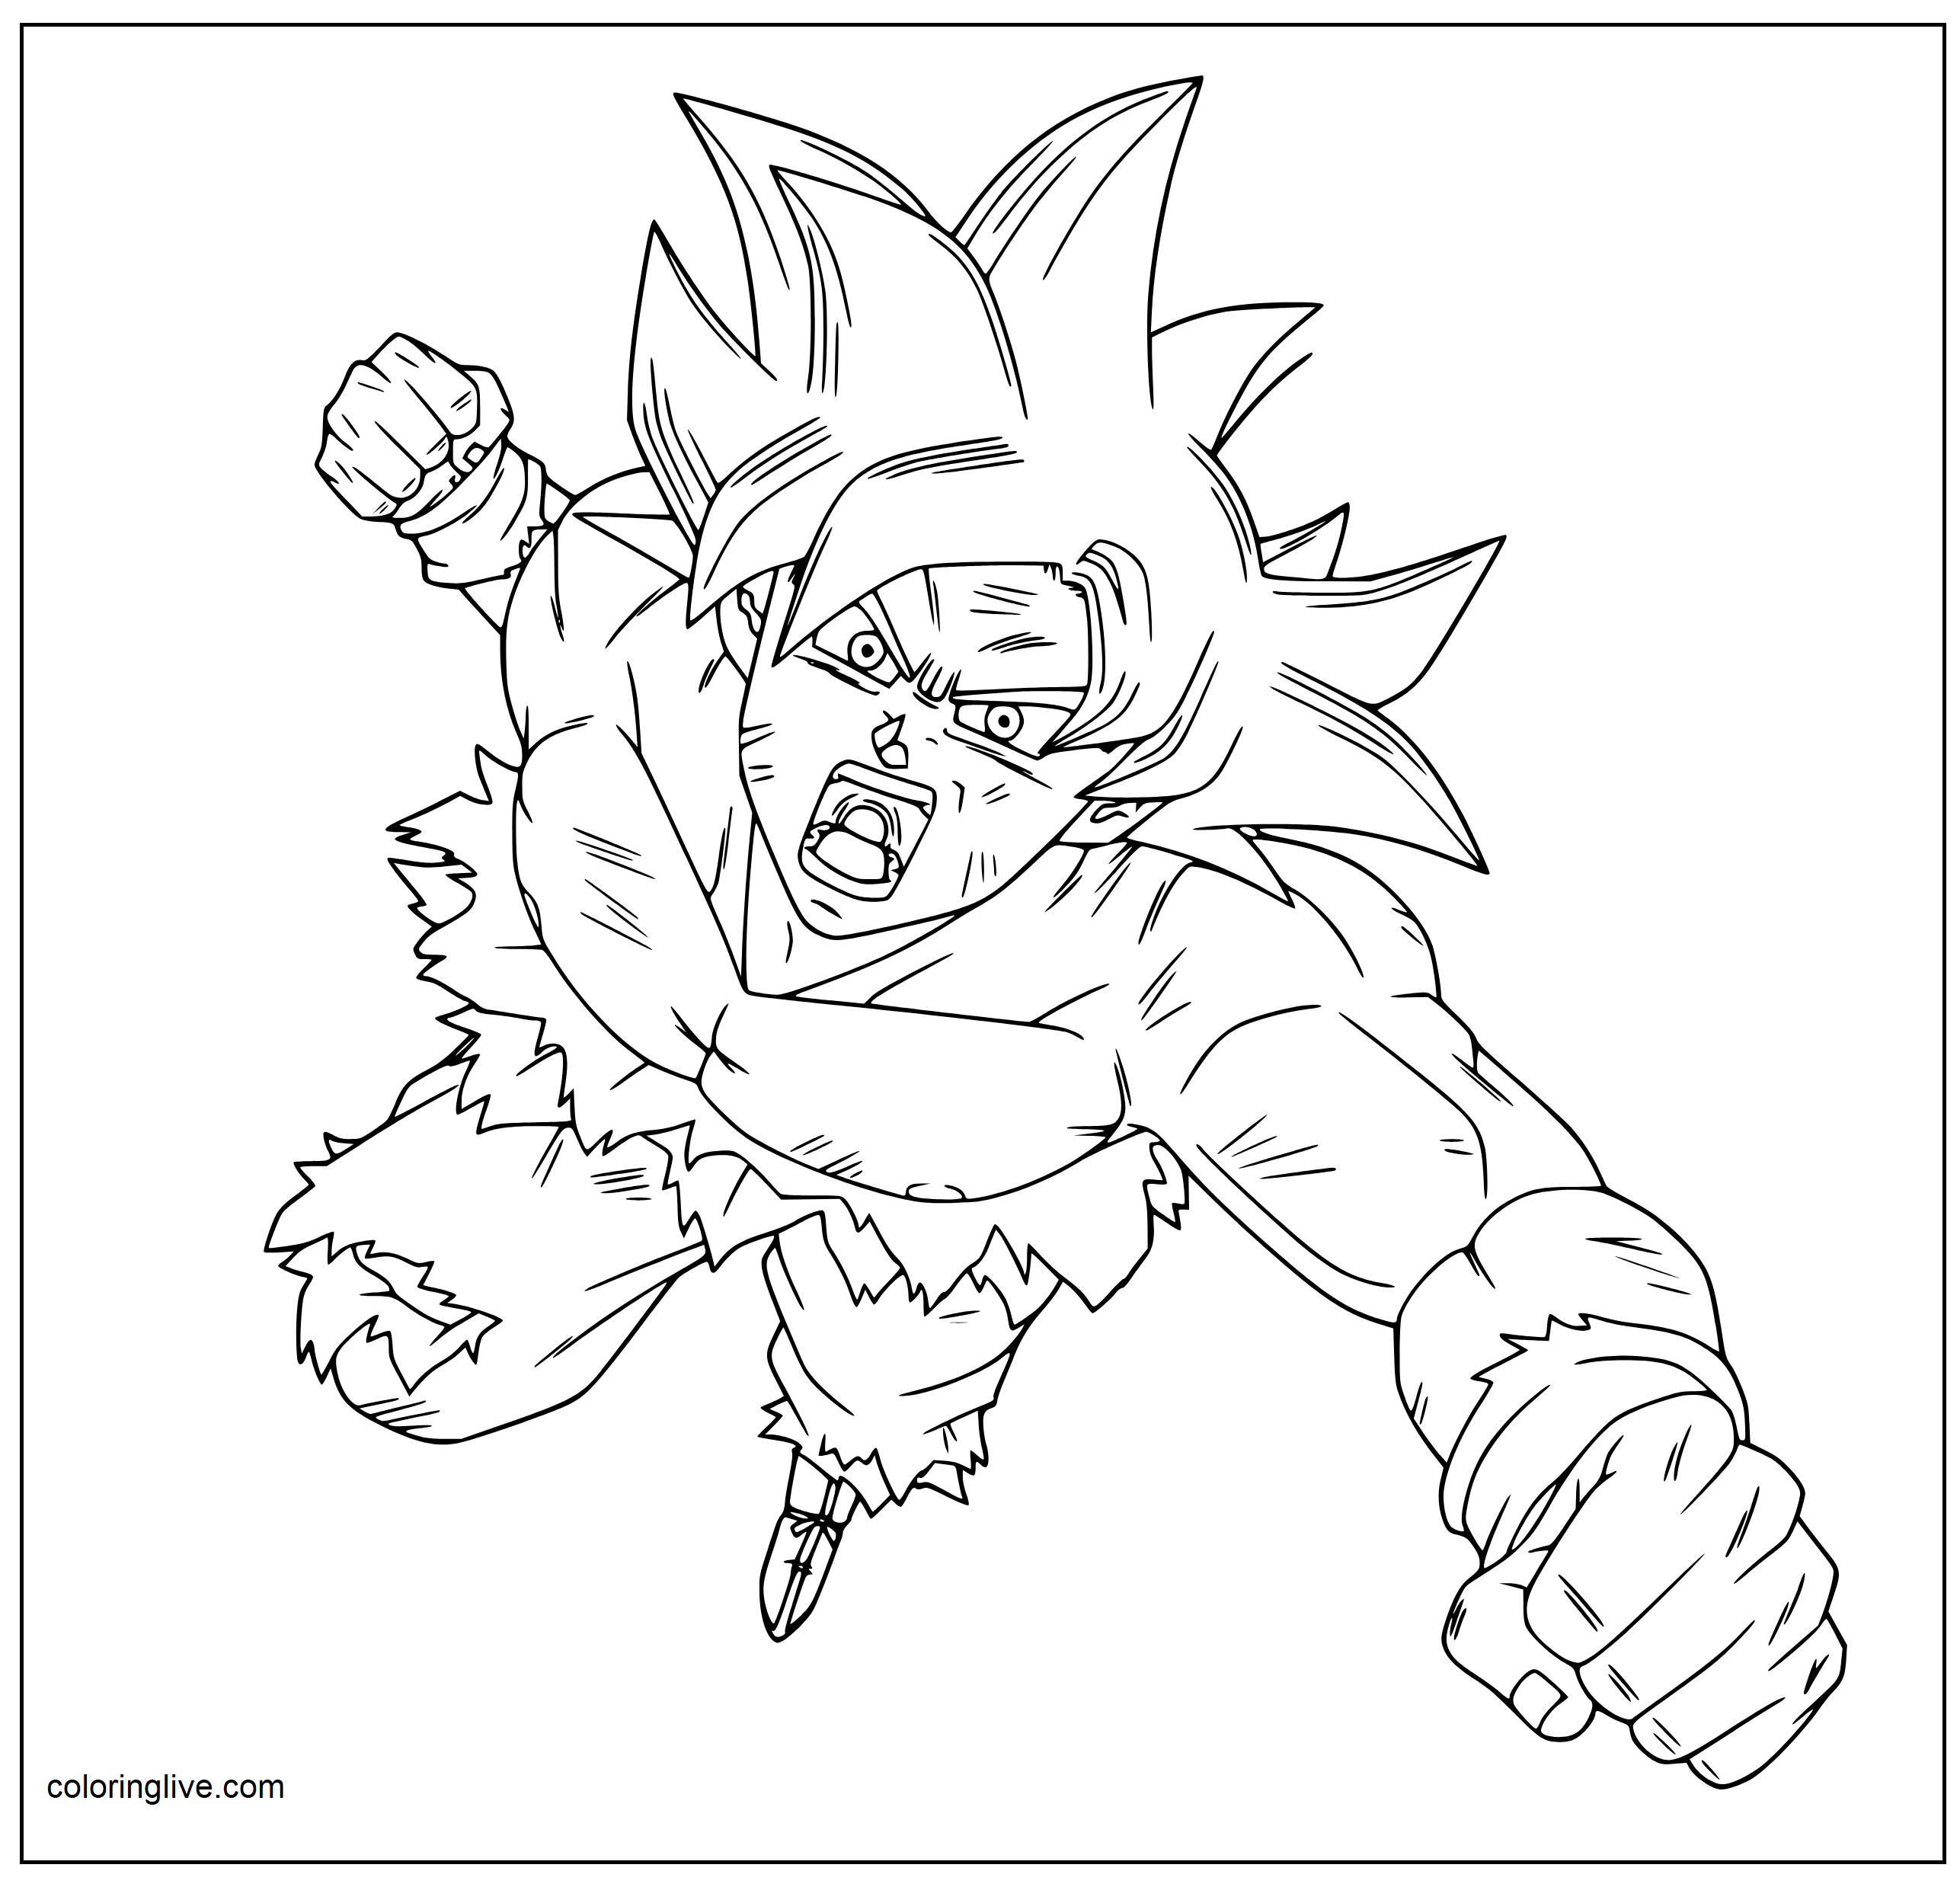 Printable Goku   2 Coloring Page for kids.